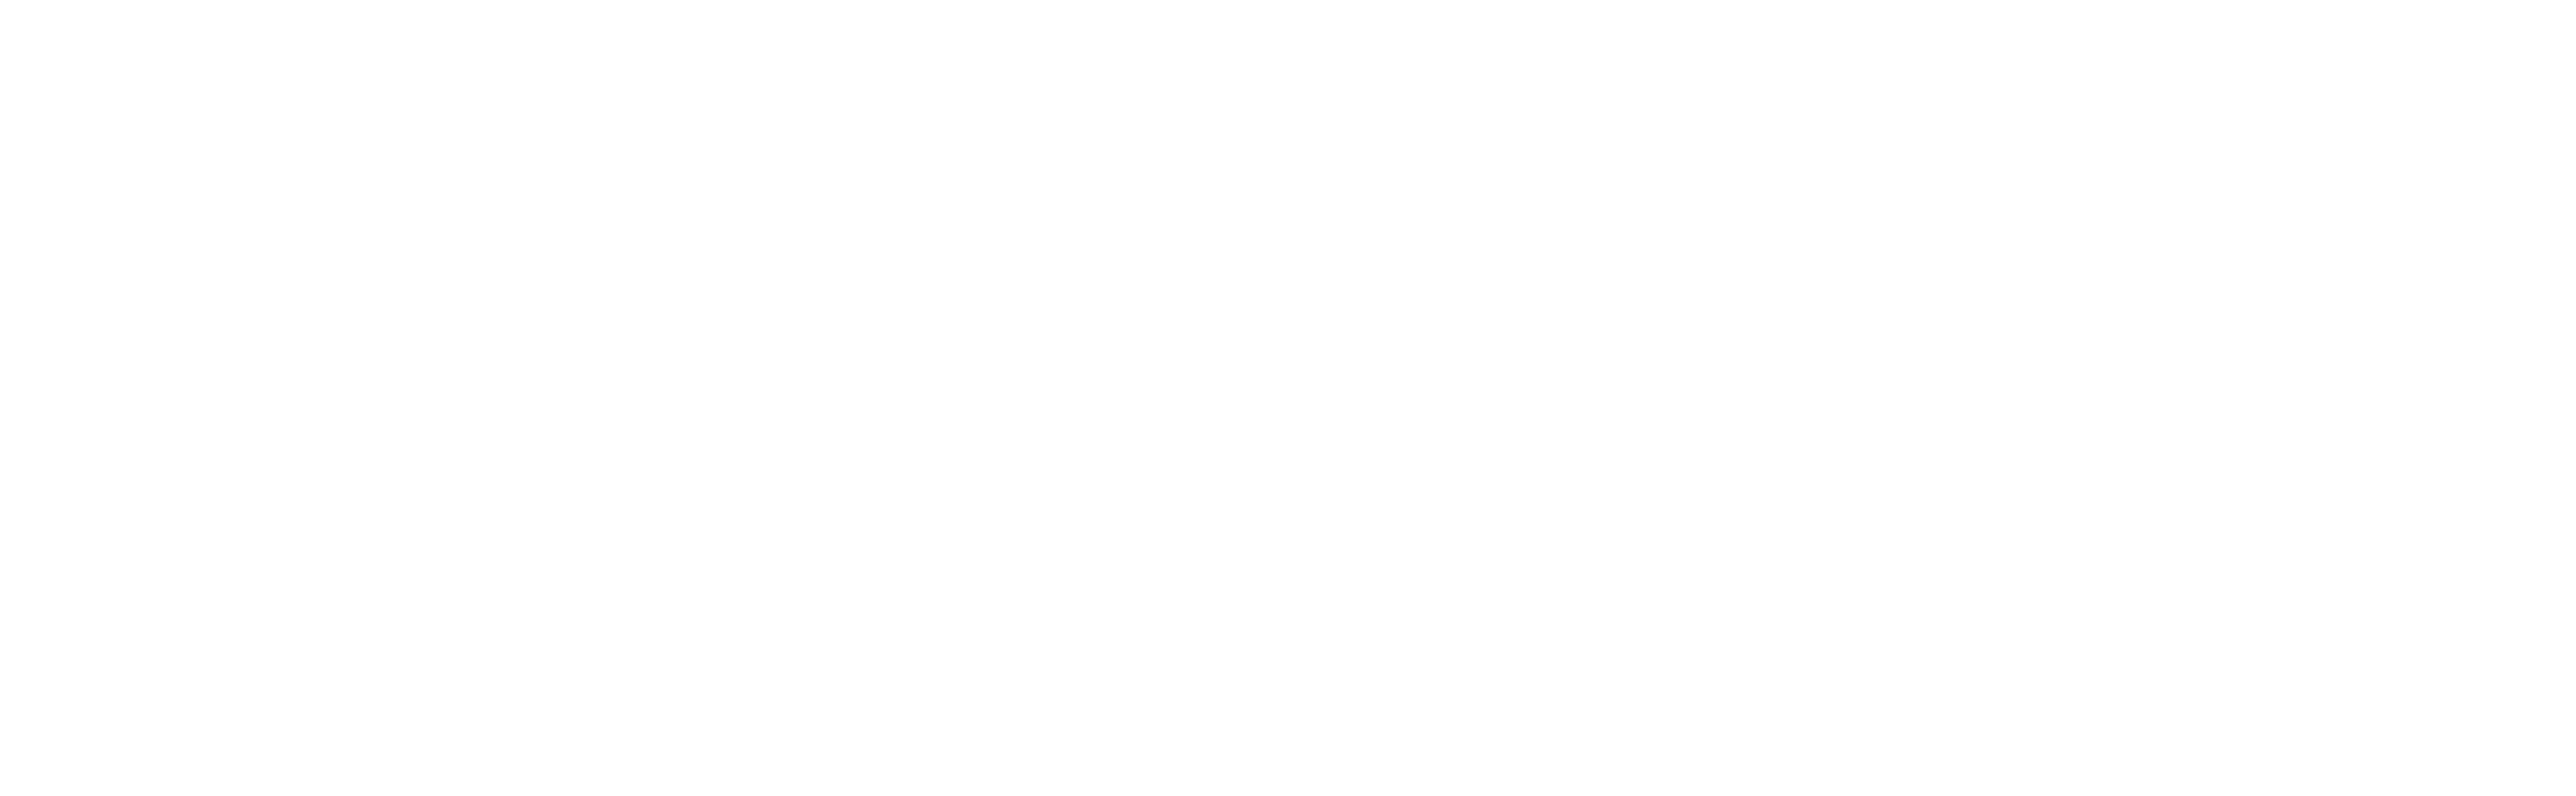 E23 Logo